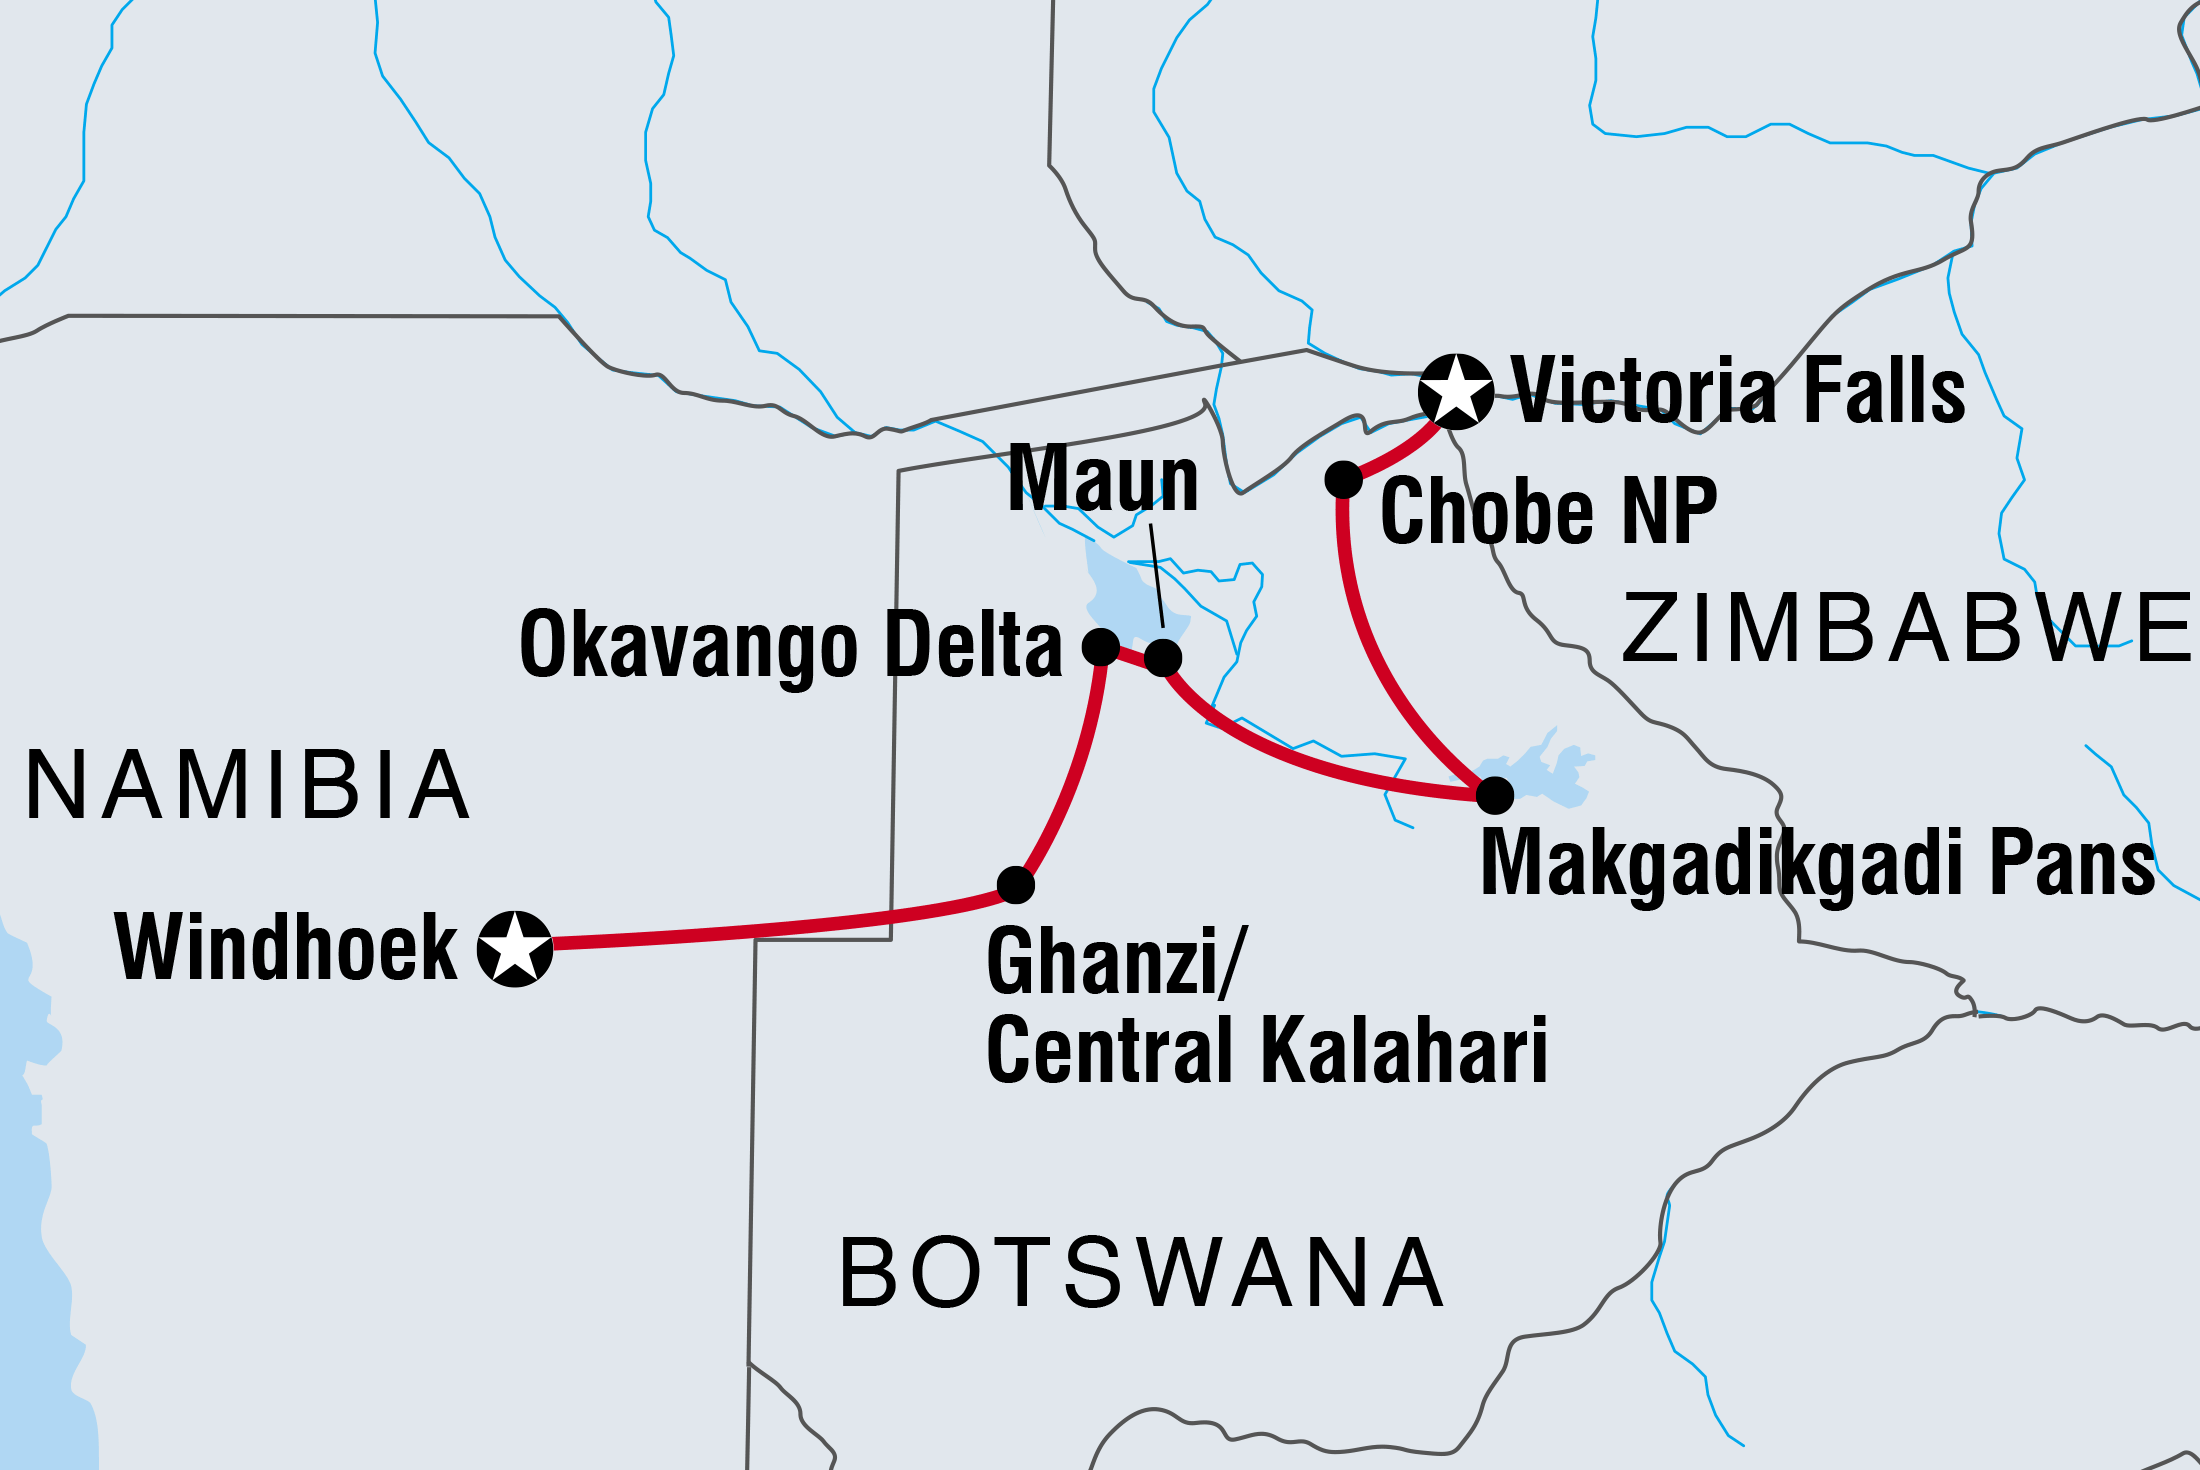 Botswana Adventure